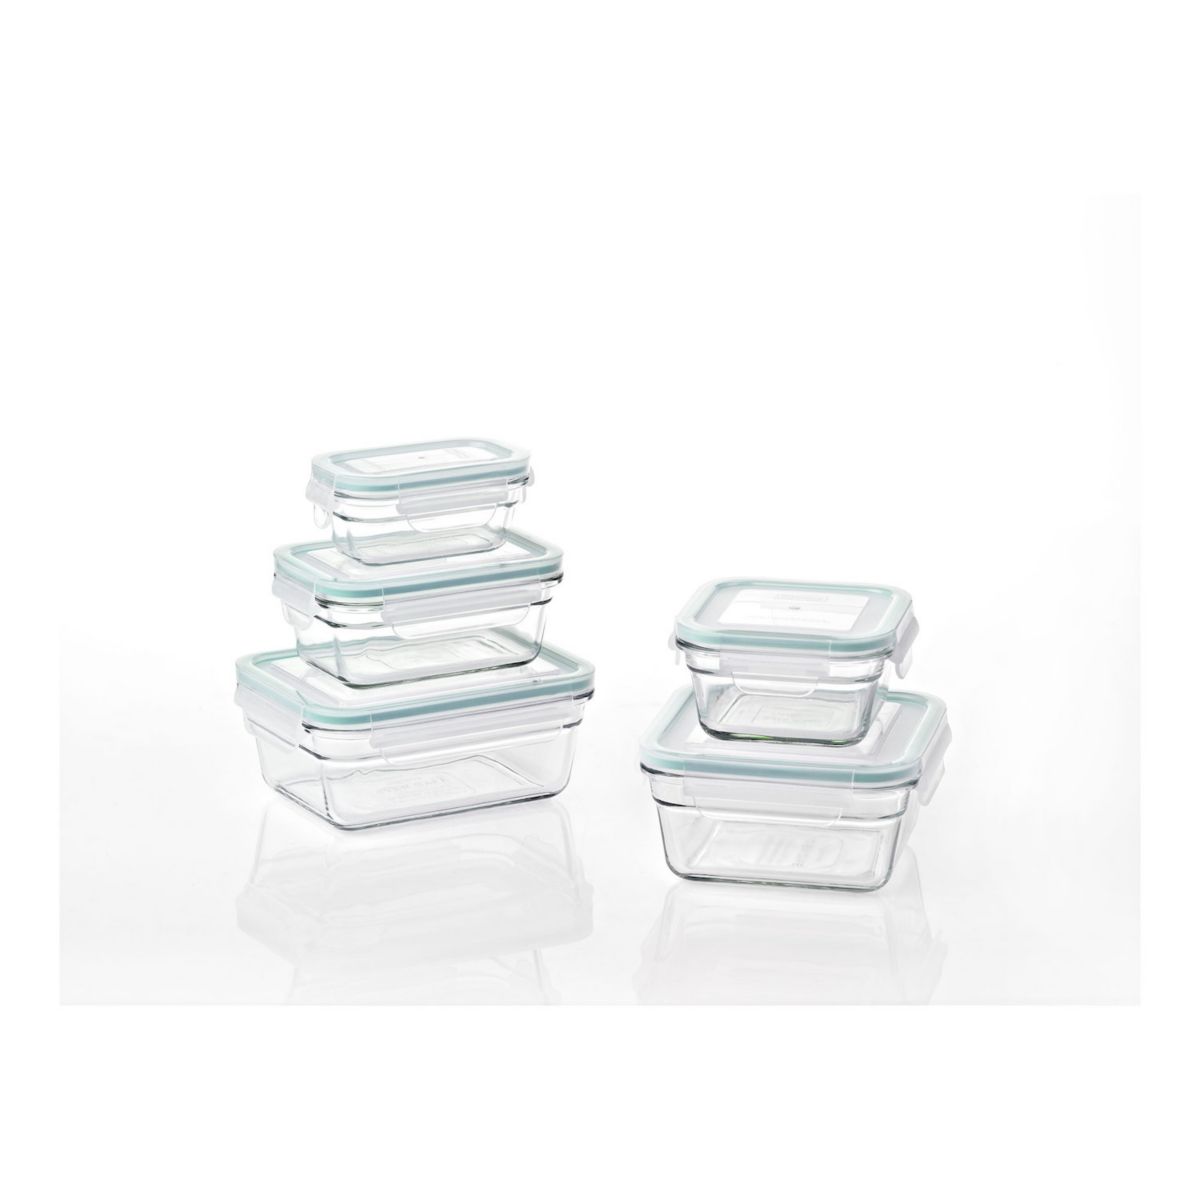 Стеклянные контейнеры для хранения пищевых продуктов Glasslock и микроволновые печи, безопасные для использования в микроволновой печи, набор из 10 предметов Glasslock